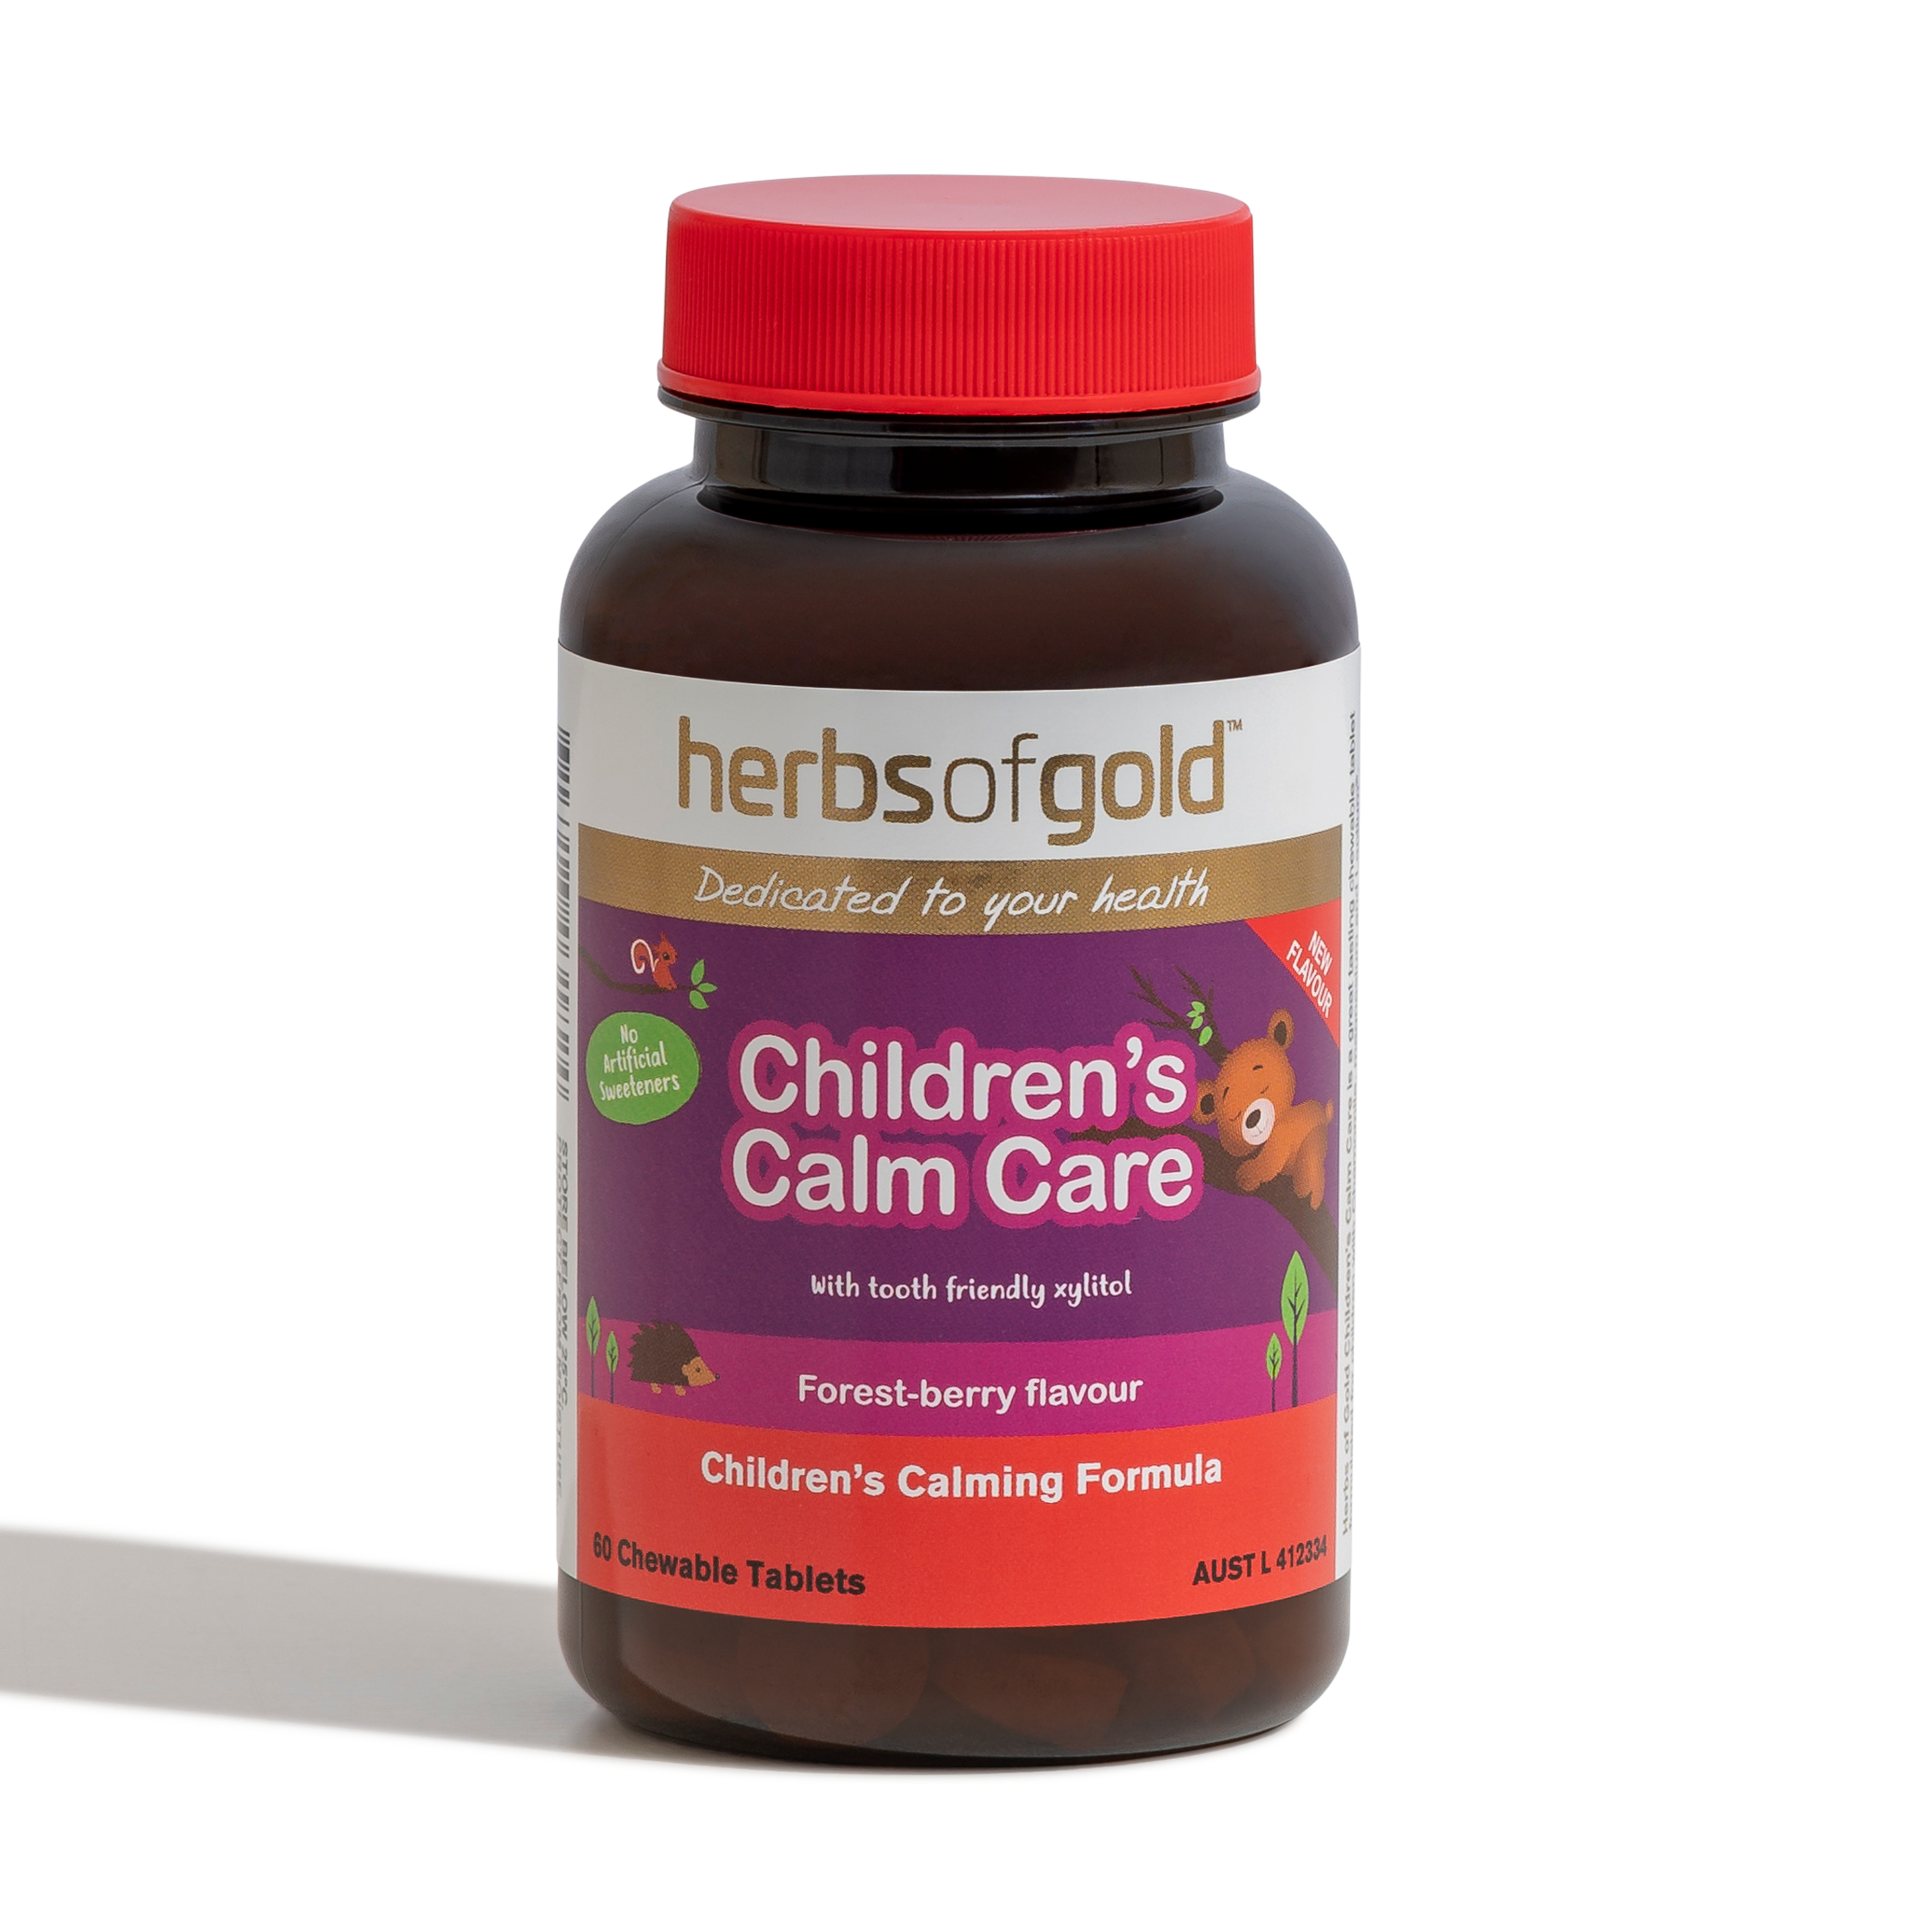 Children's Calm Care